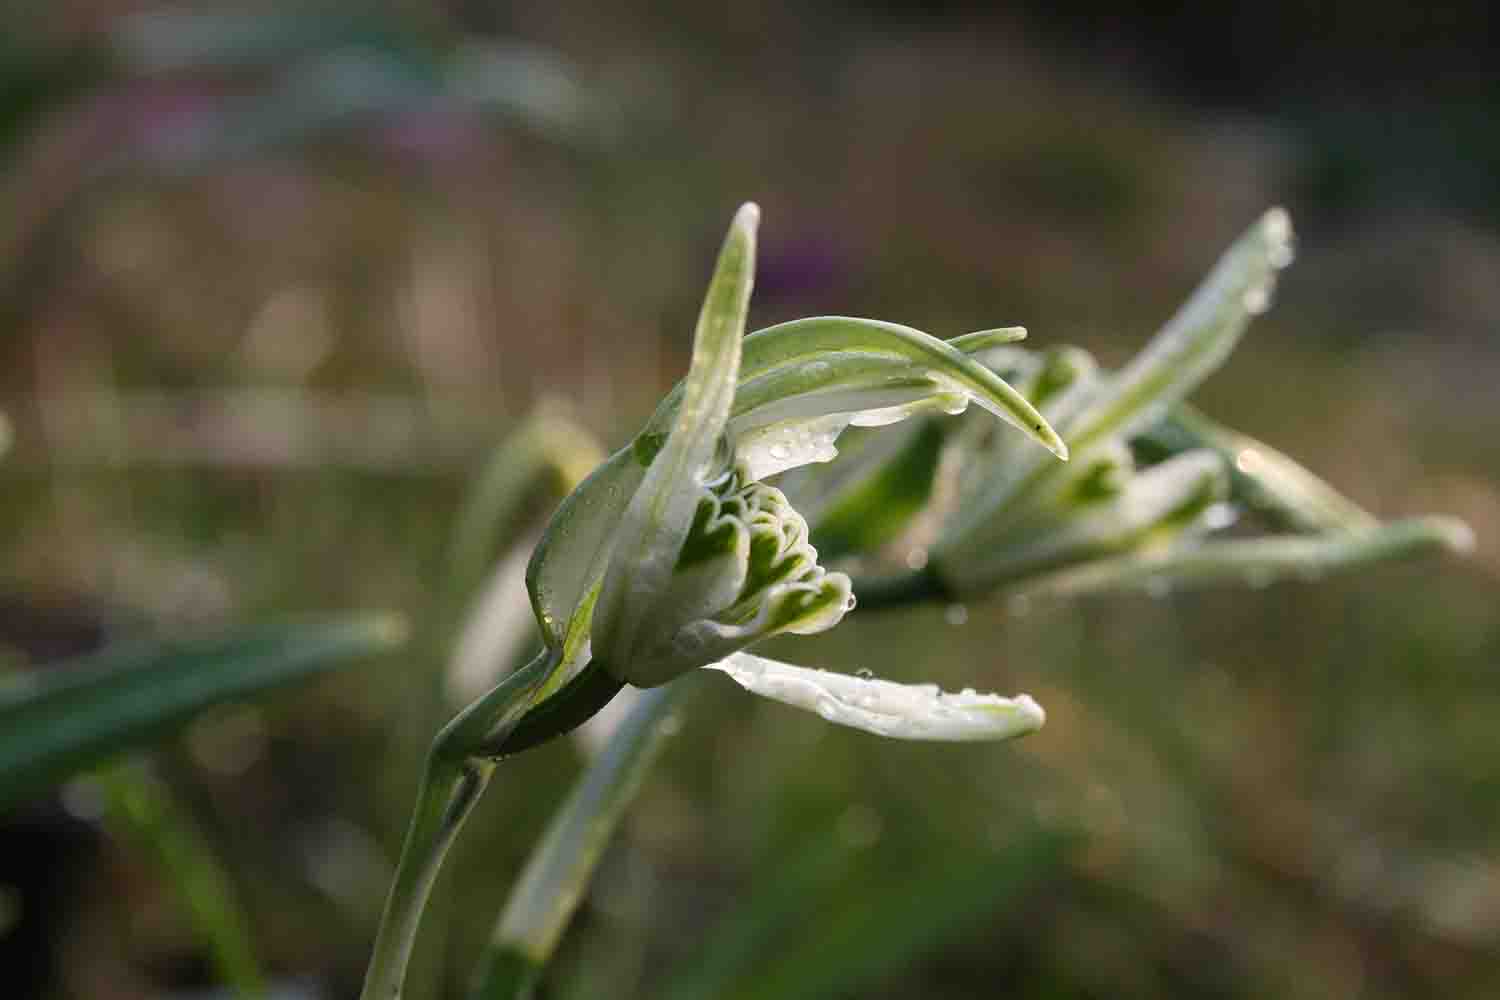 oder Galanthus nivalis ' Narwhal ' mit grünen spitzen Blütenblättern und einer aufwärts gerichteten Blüte.